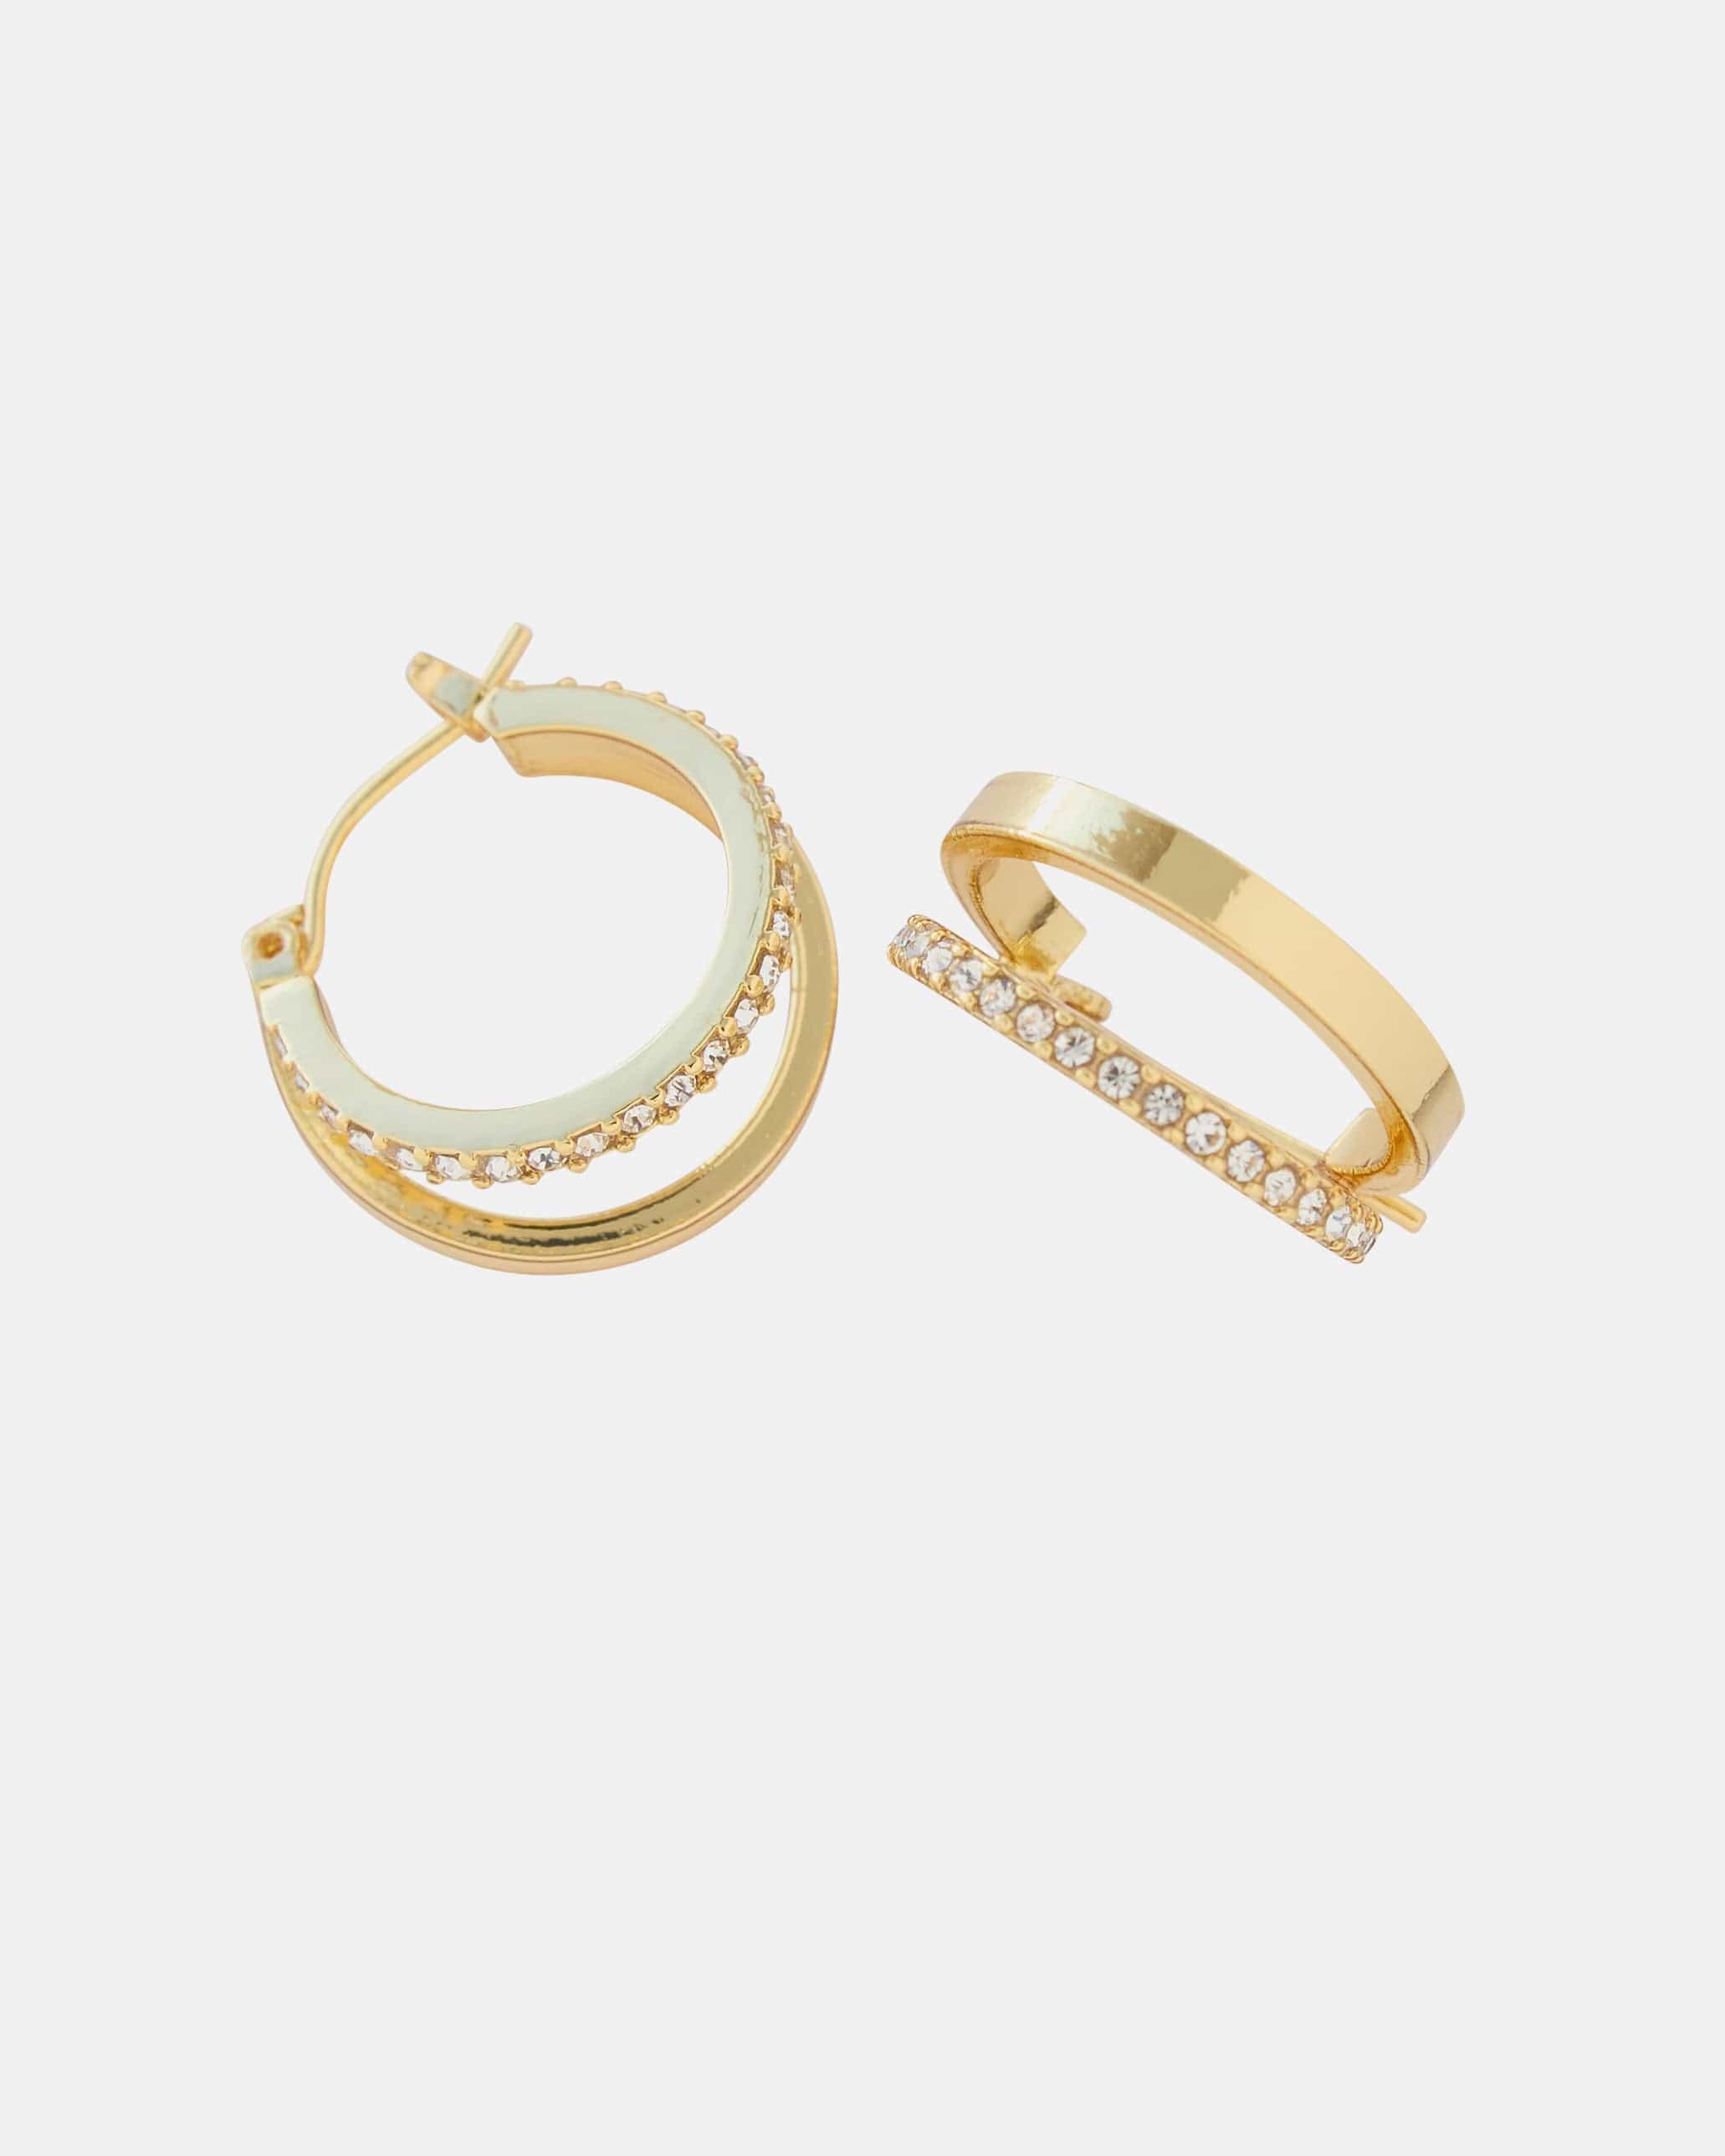 Gold huggie hoop earrings with glass stones.